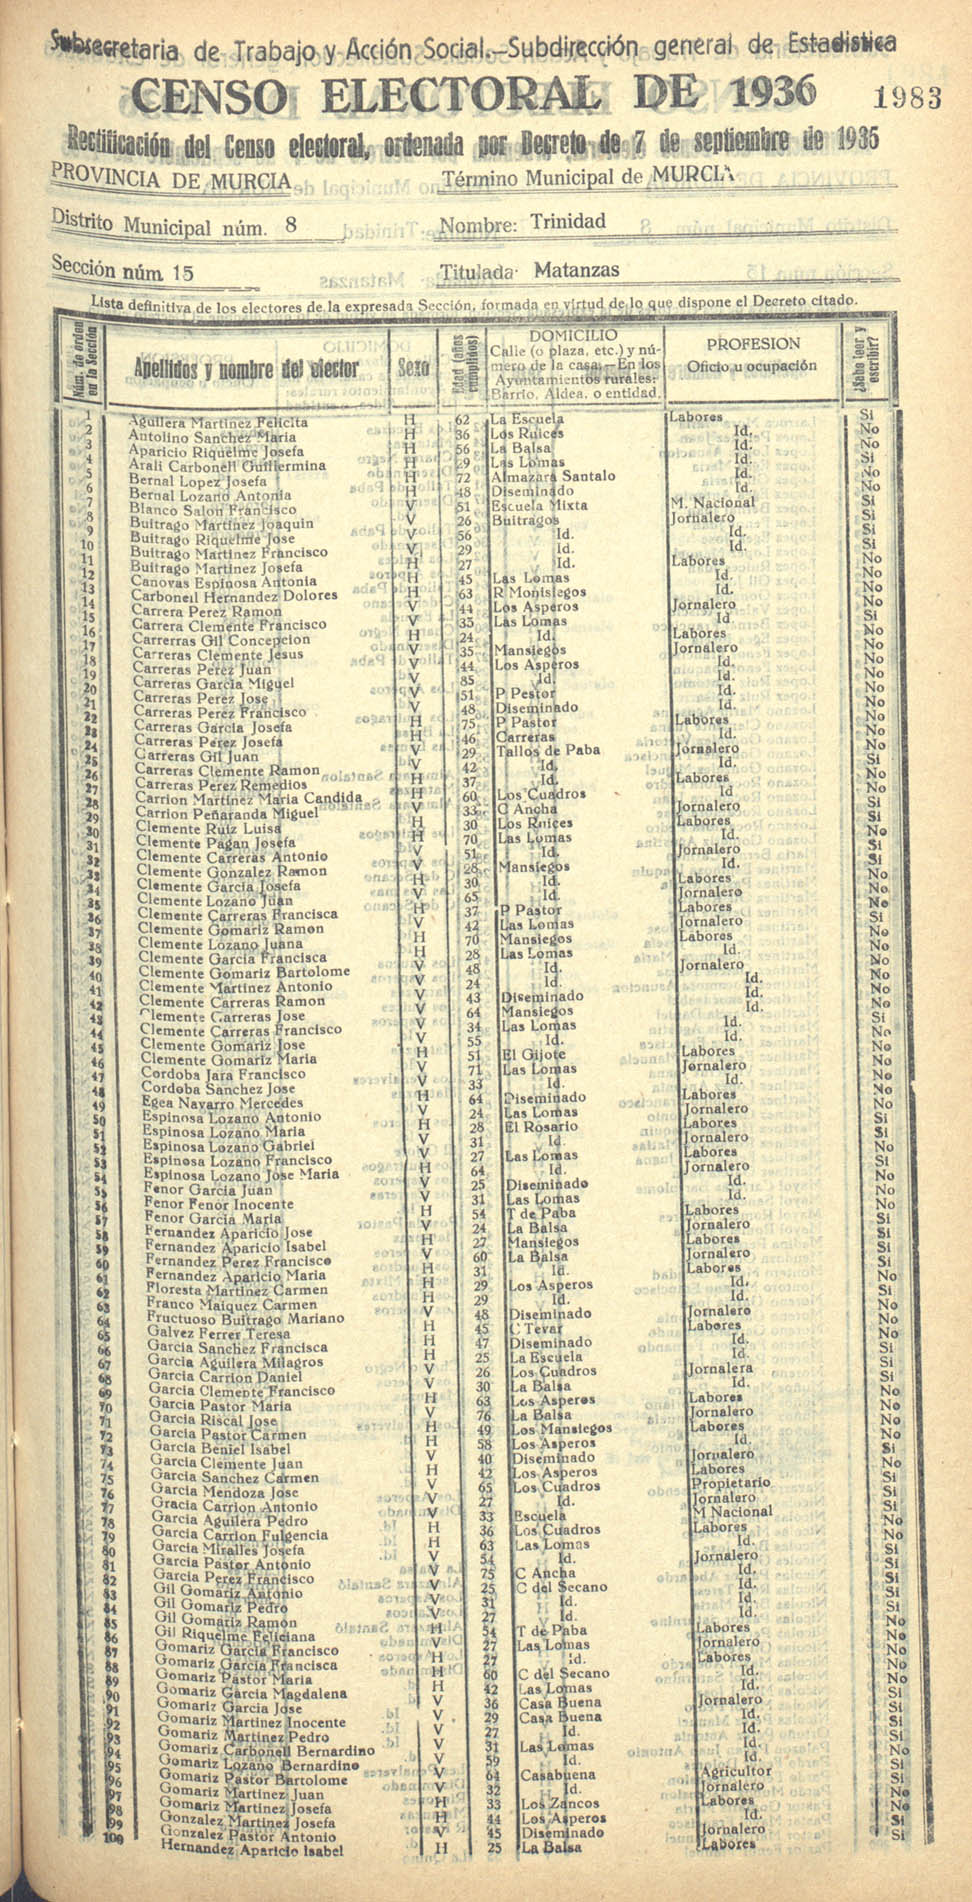 Censo electoral provincial de 1936. Murcia. Distrito 8º, Trinidad. Sección 15ª, Matanzas